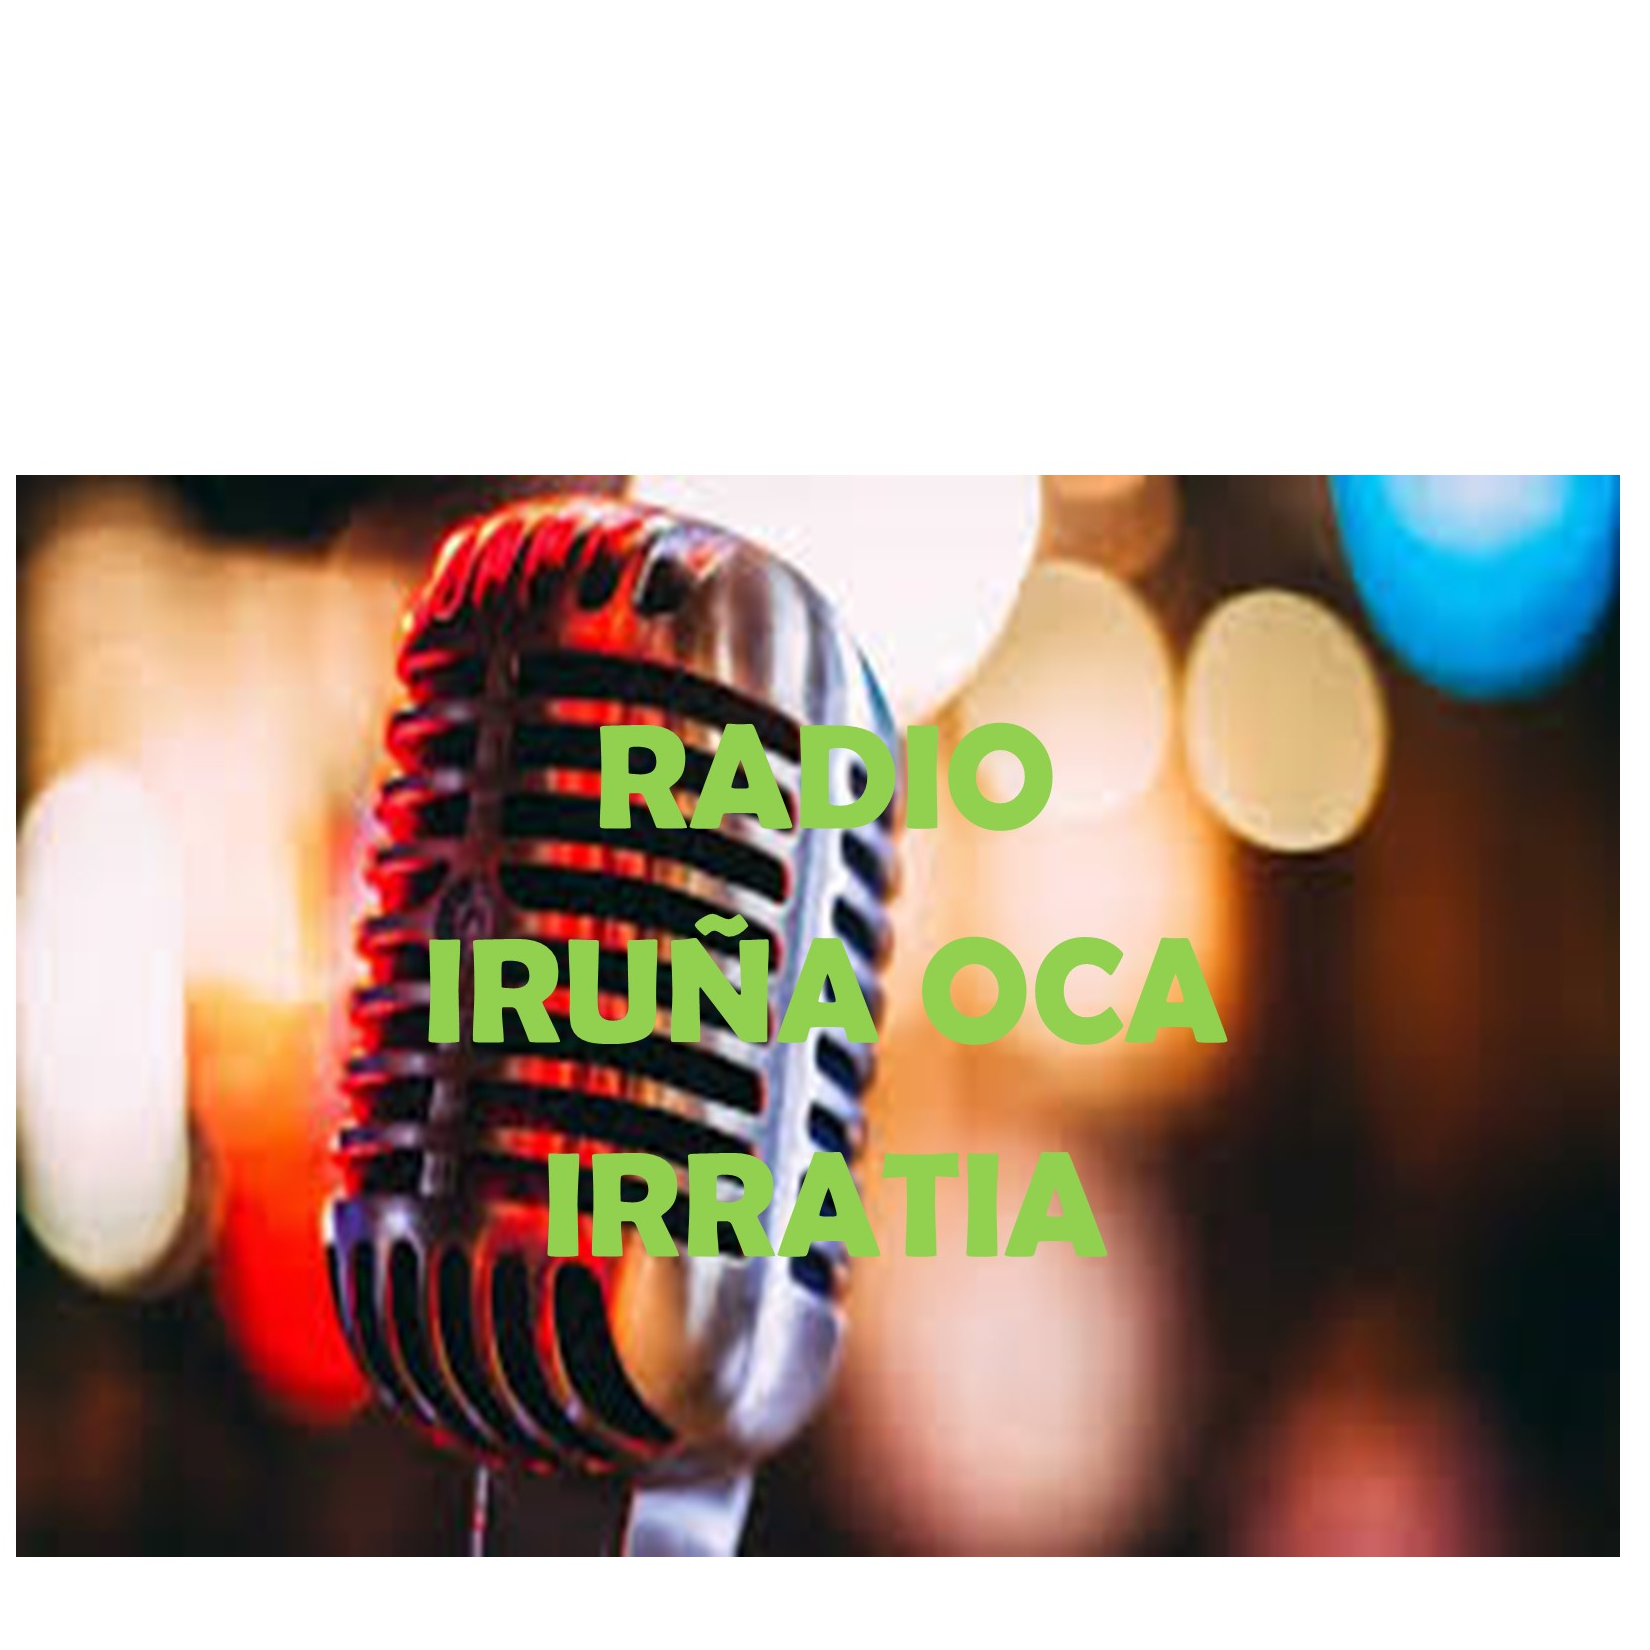 Radio Iruña Oka Irratia